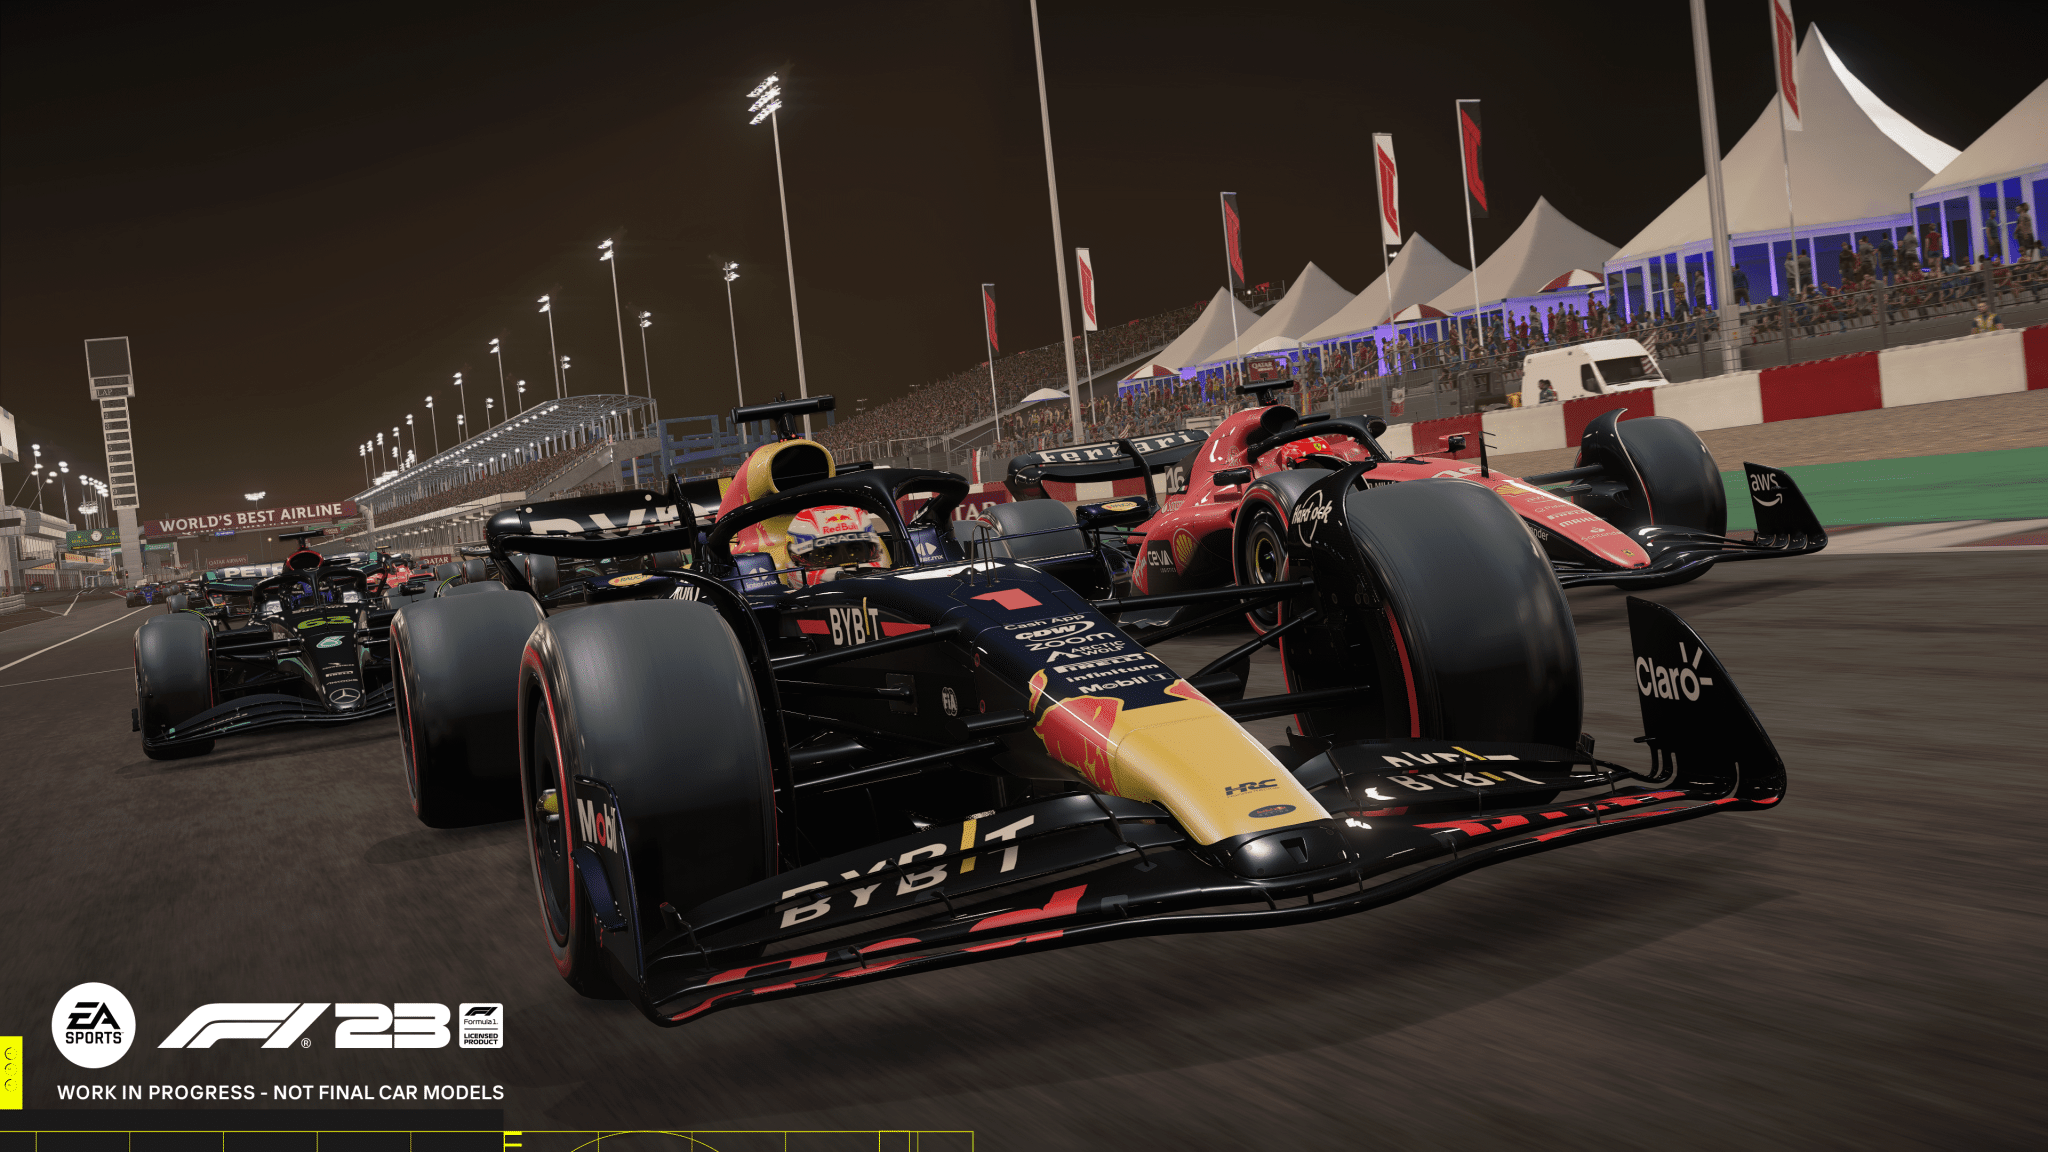 Dal garage alla pista nel nuovo trailer di EA Sports F1 23! 2